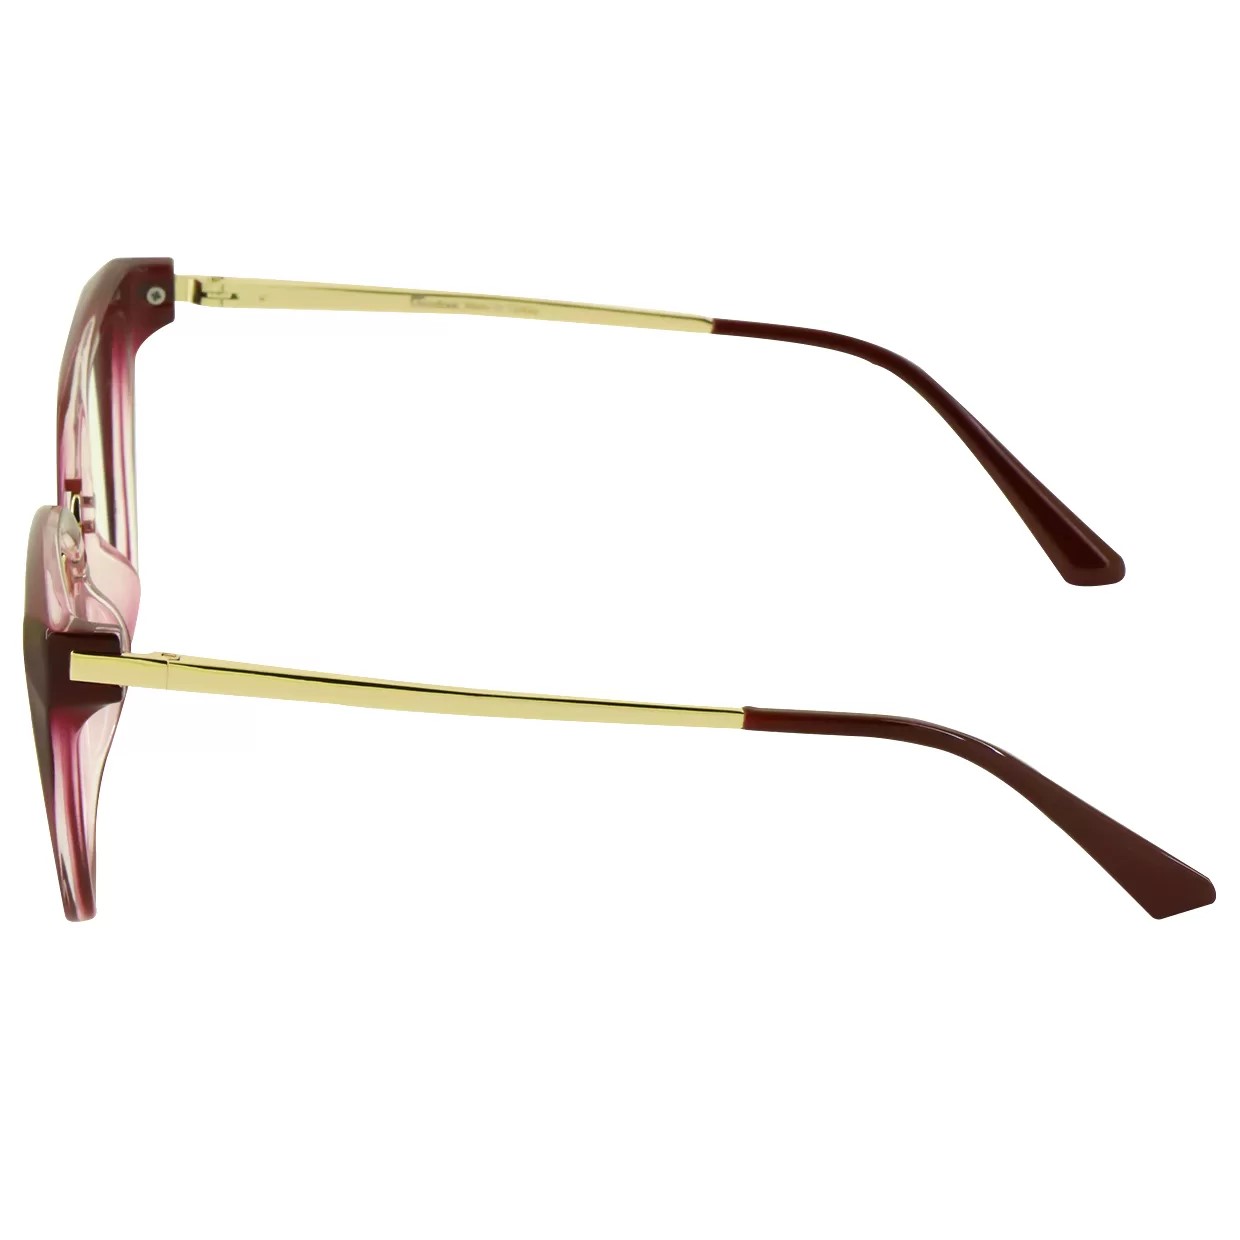 فریم عینک طبی گودلوک مدل 95301 -  - 4